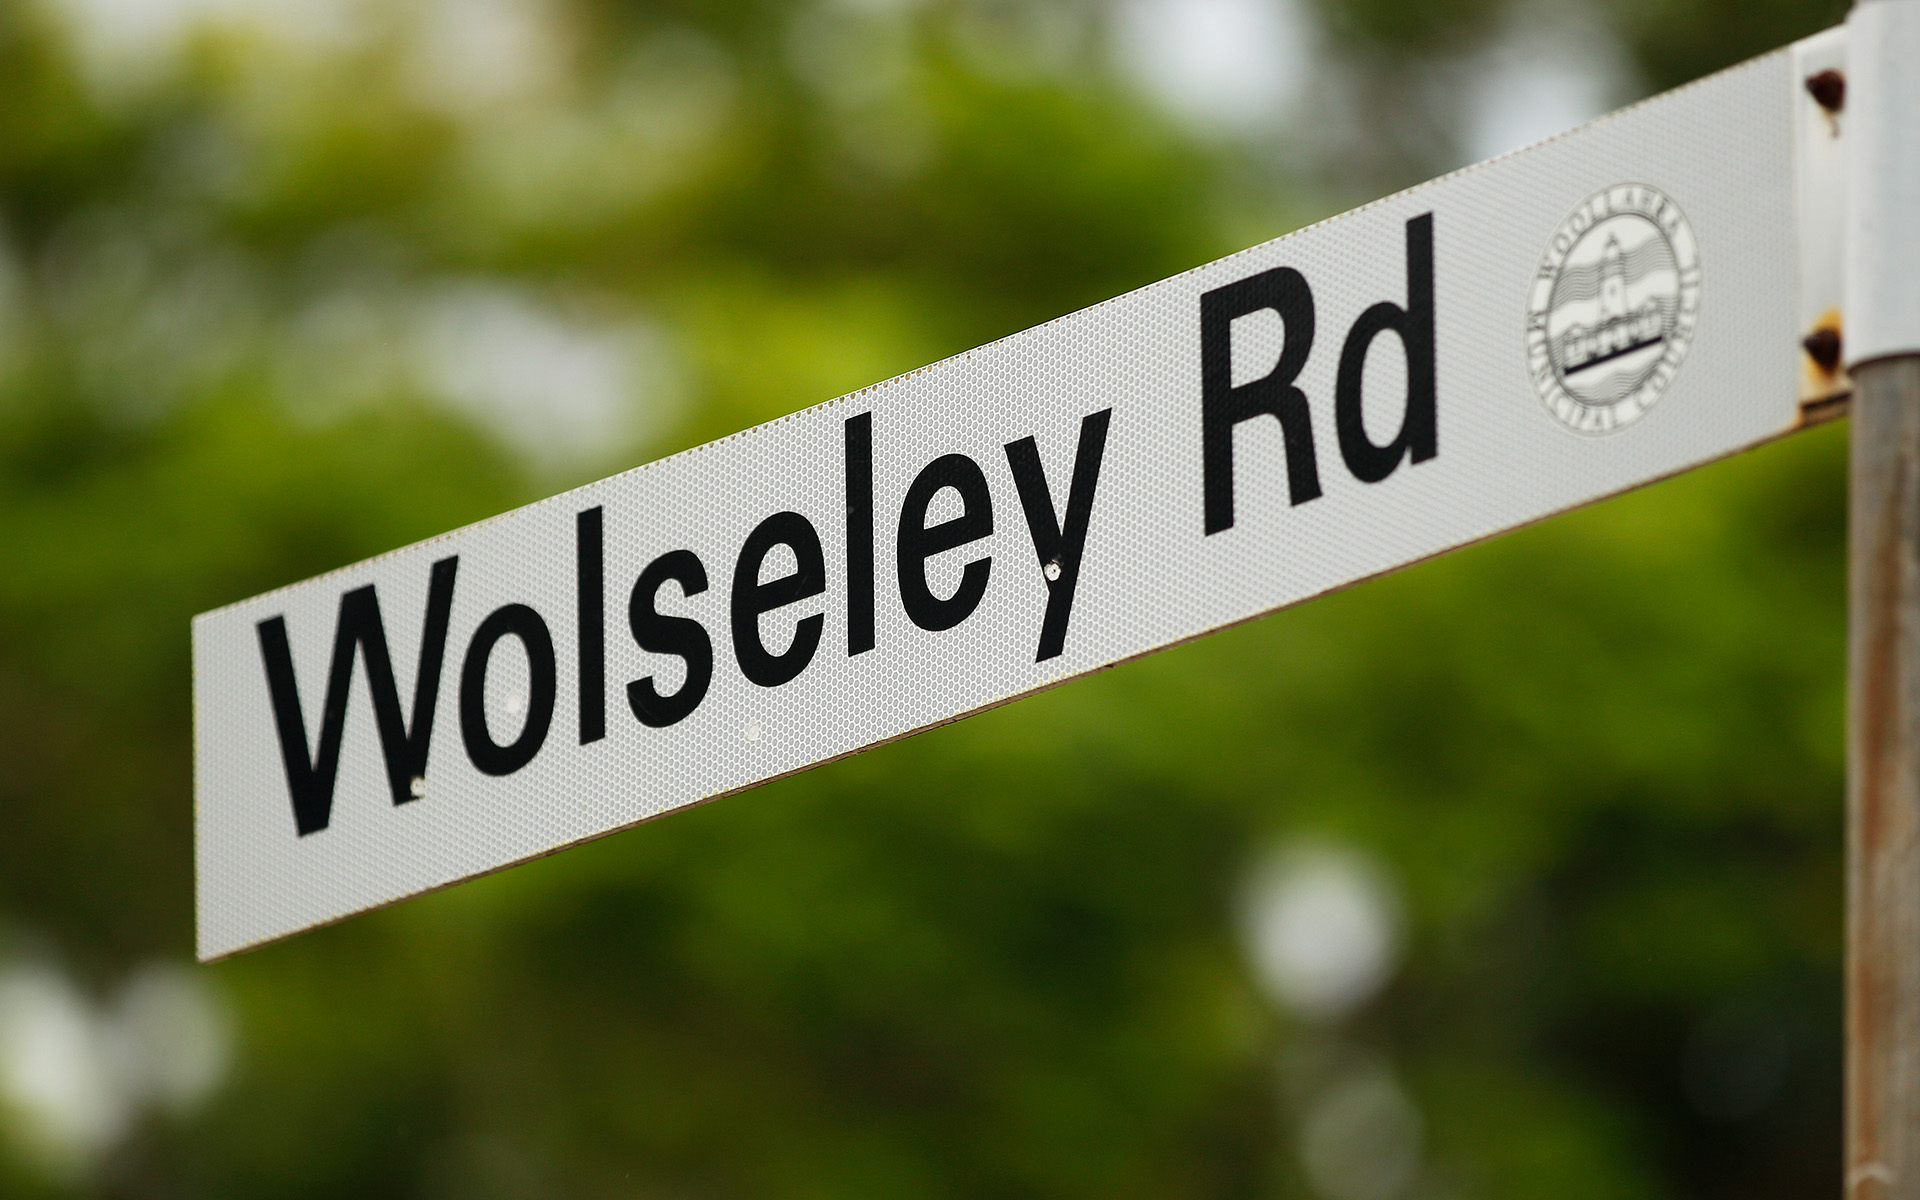 Wolseley Road in Sydney's Point Piper